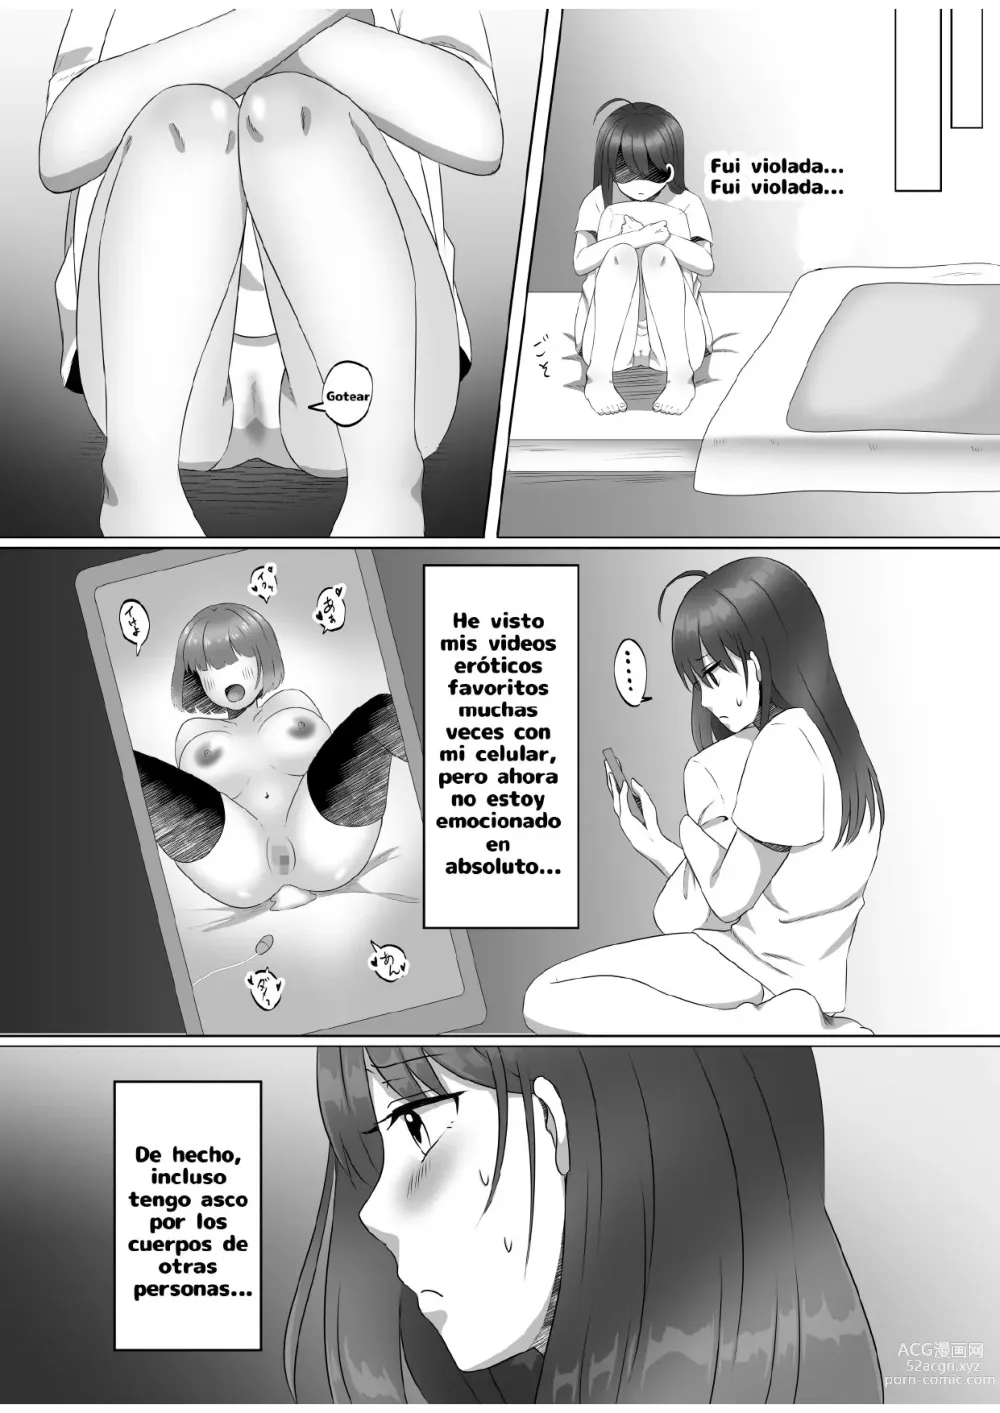 Page 14 of doujinshi ¿Porque me convertí en una mujer?